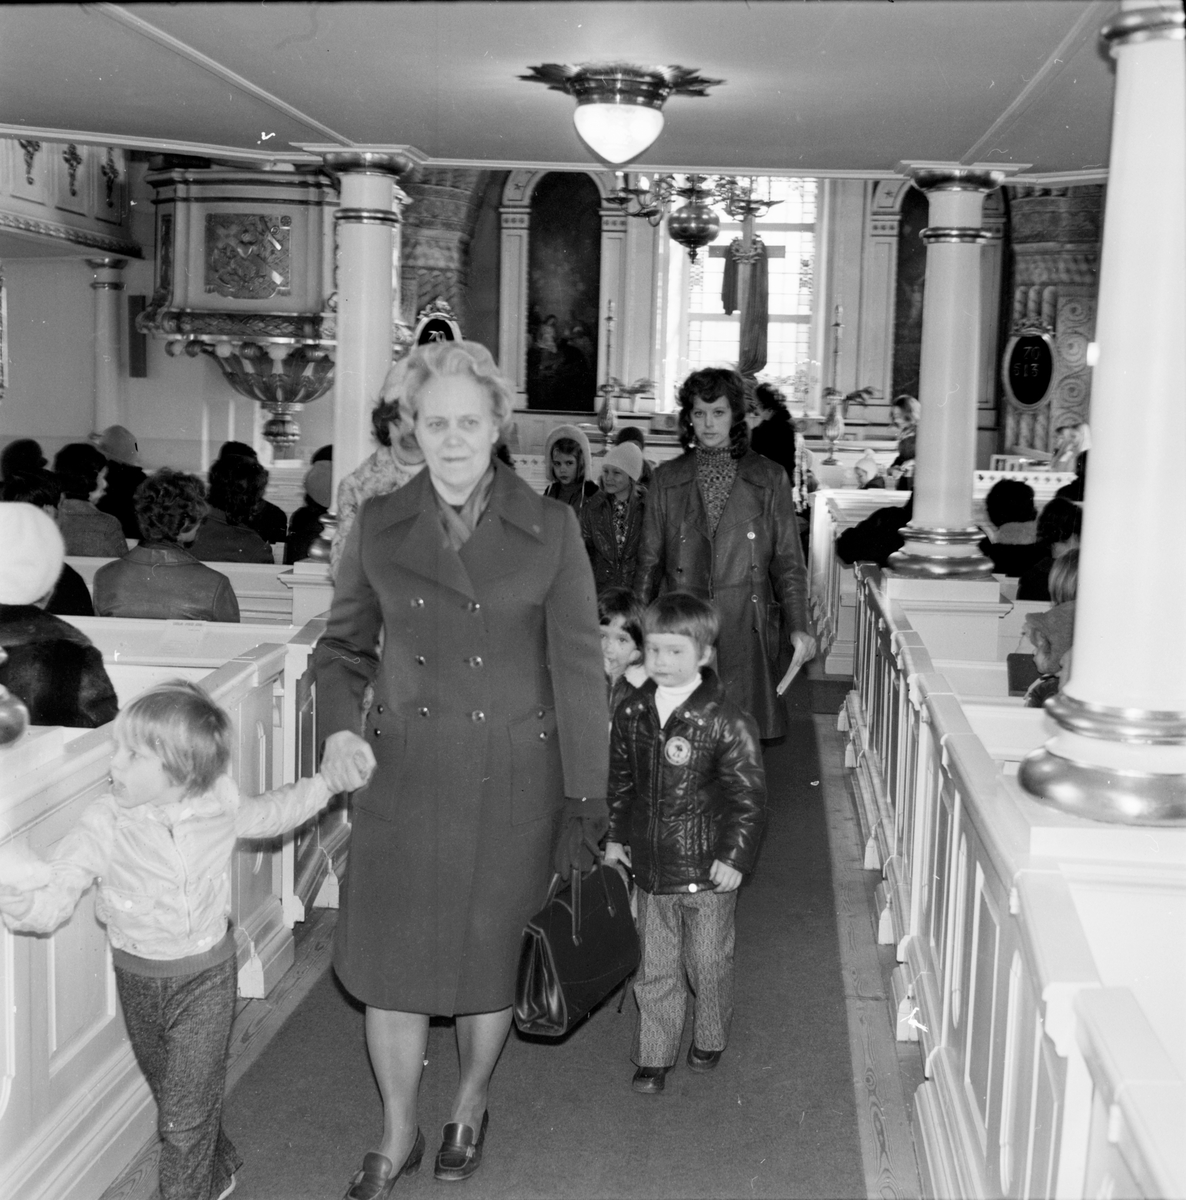 Arbrå Kyrka,
Besök av kyrkans barntimme,
April 1972